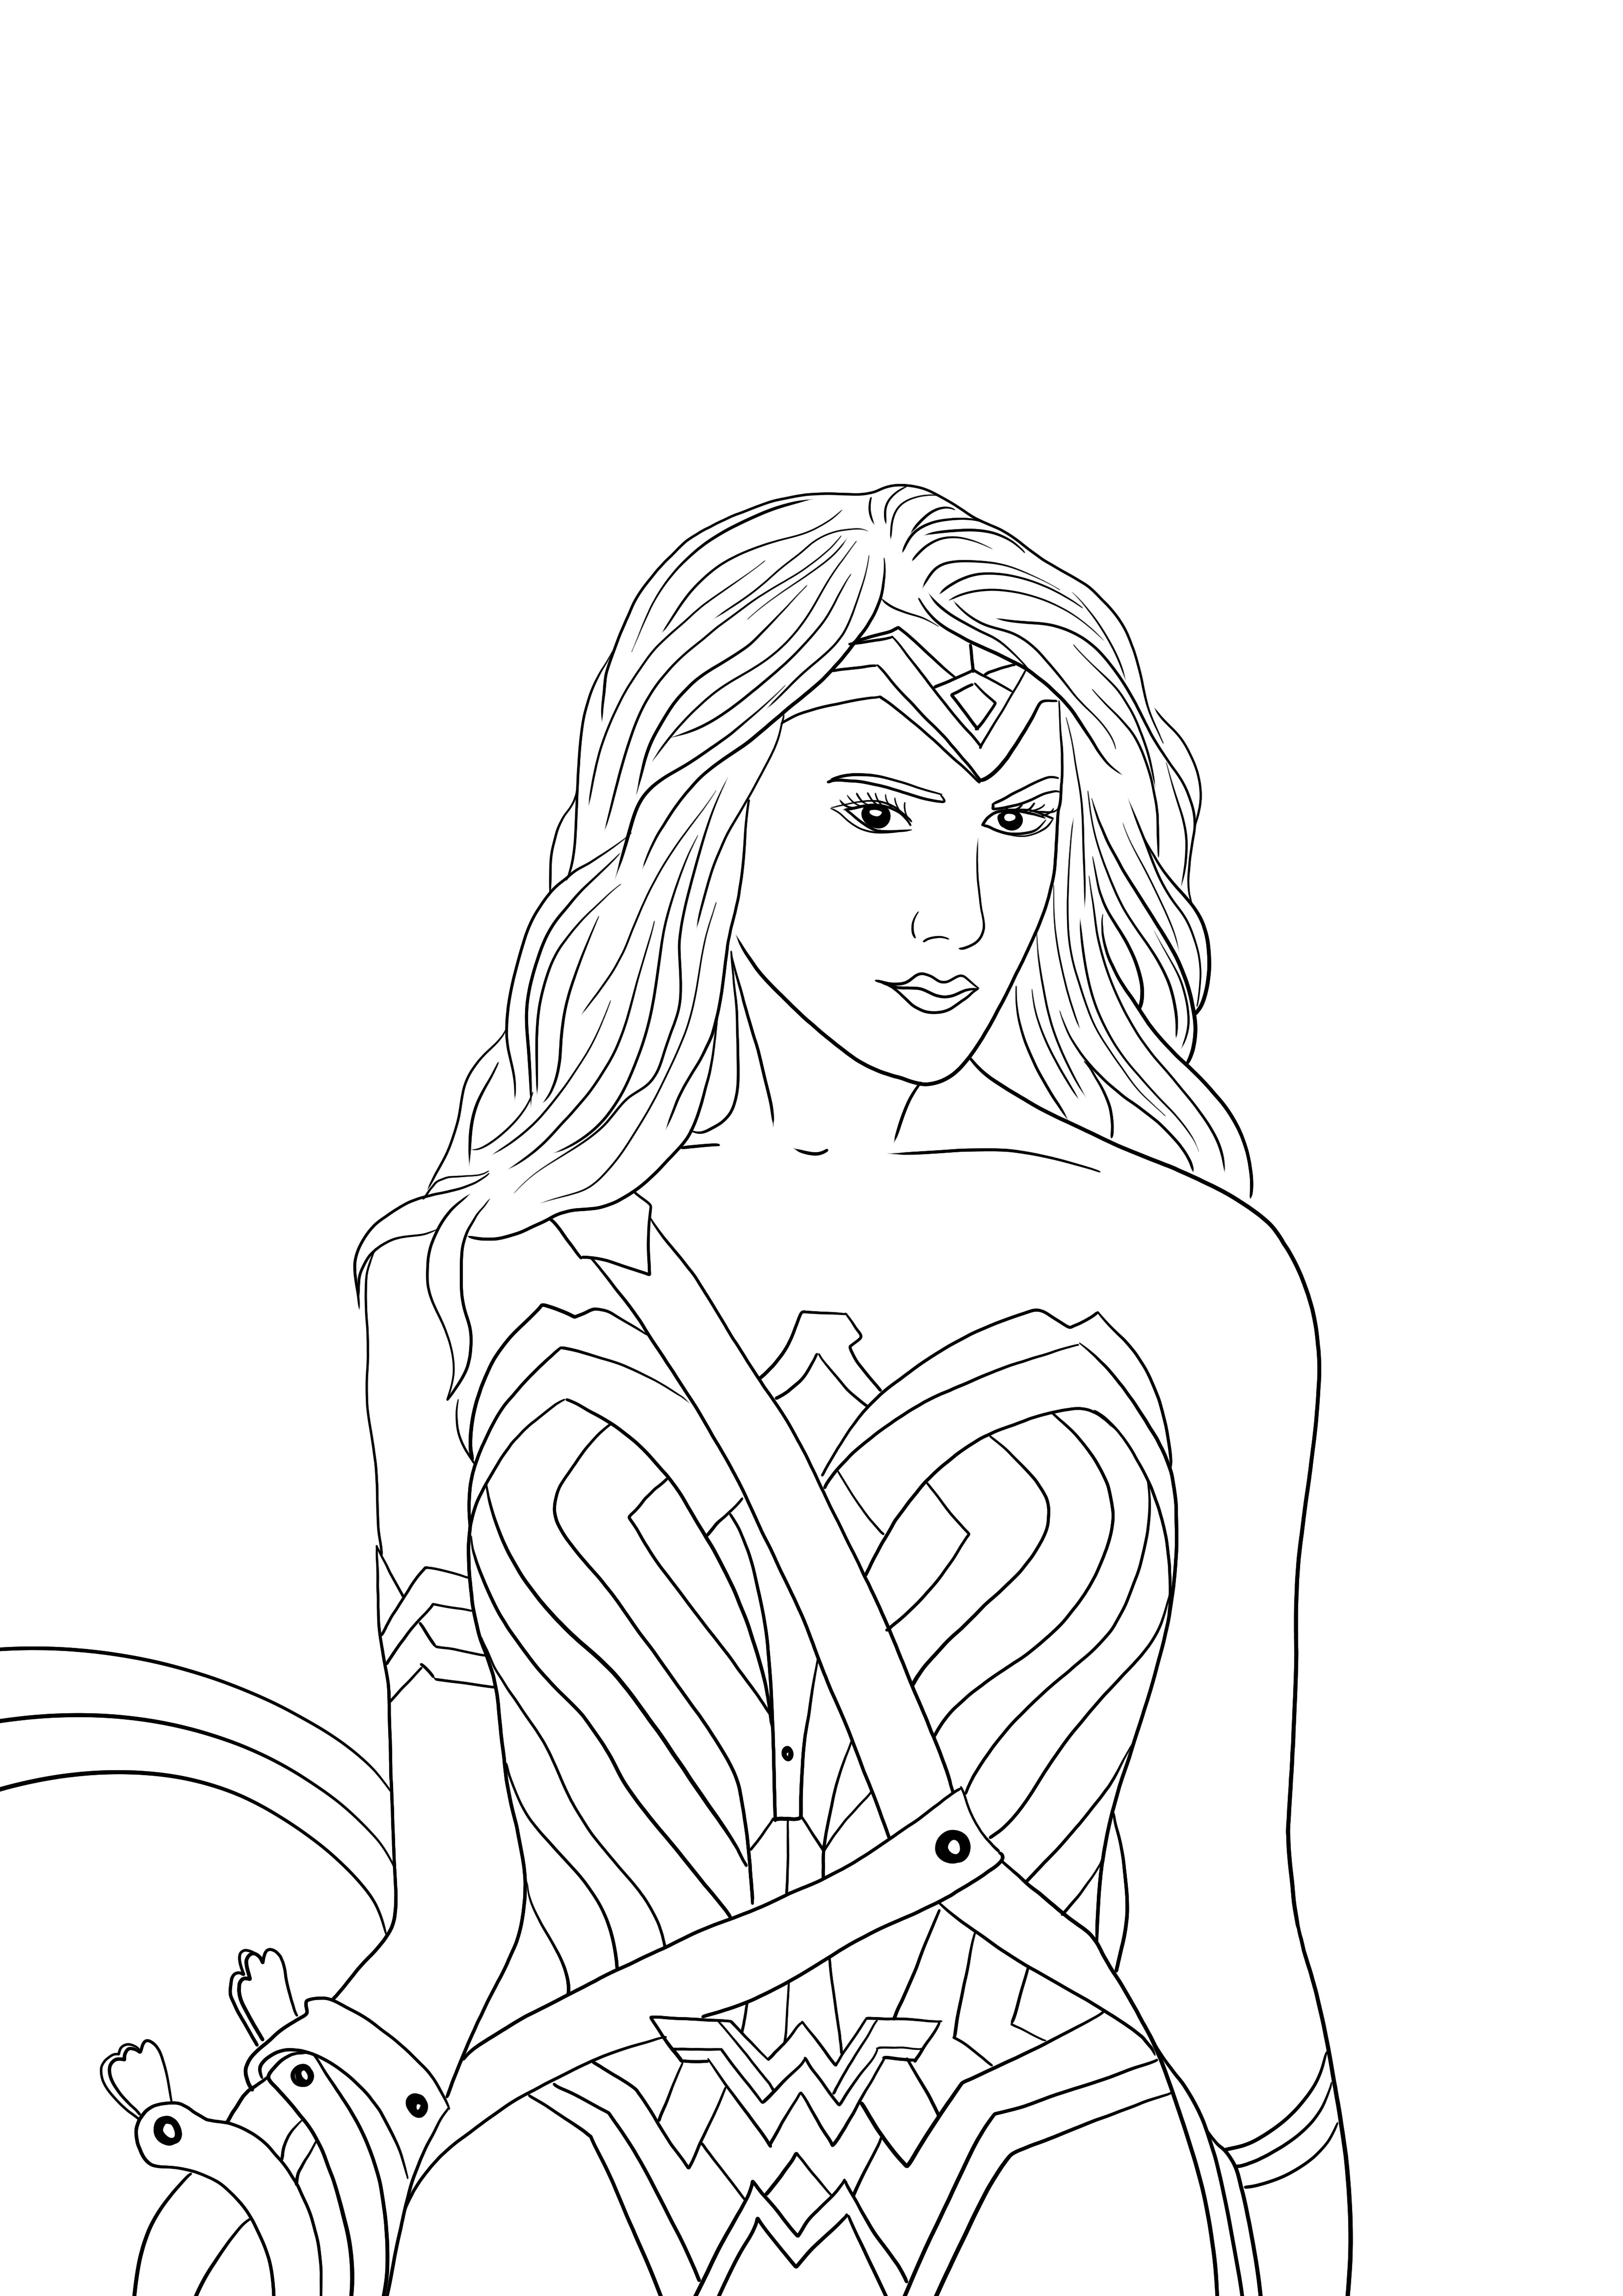 Wonder Woman ja hänen kilpensä ladata tai tulostaa ilmaiseksi